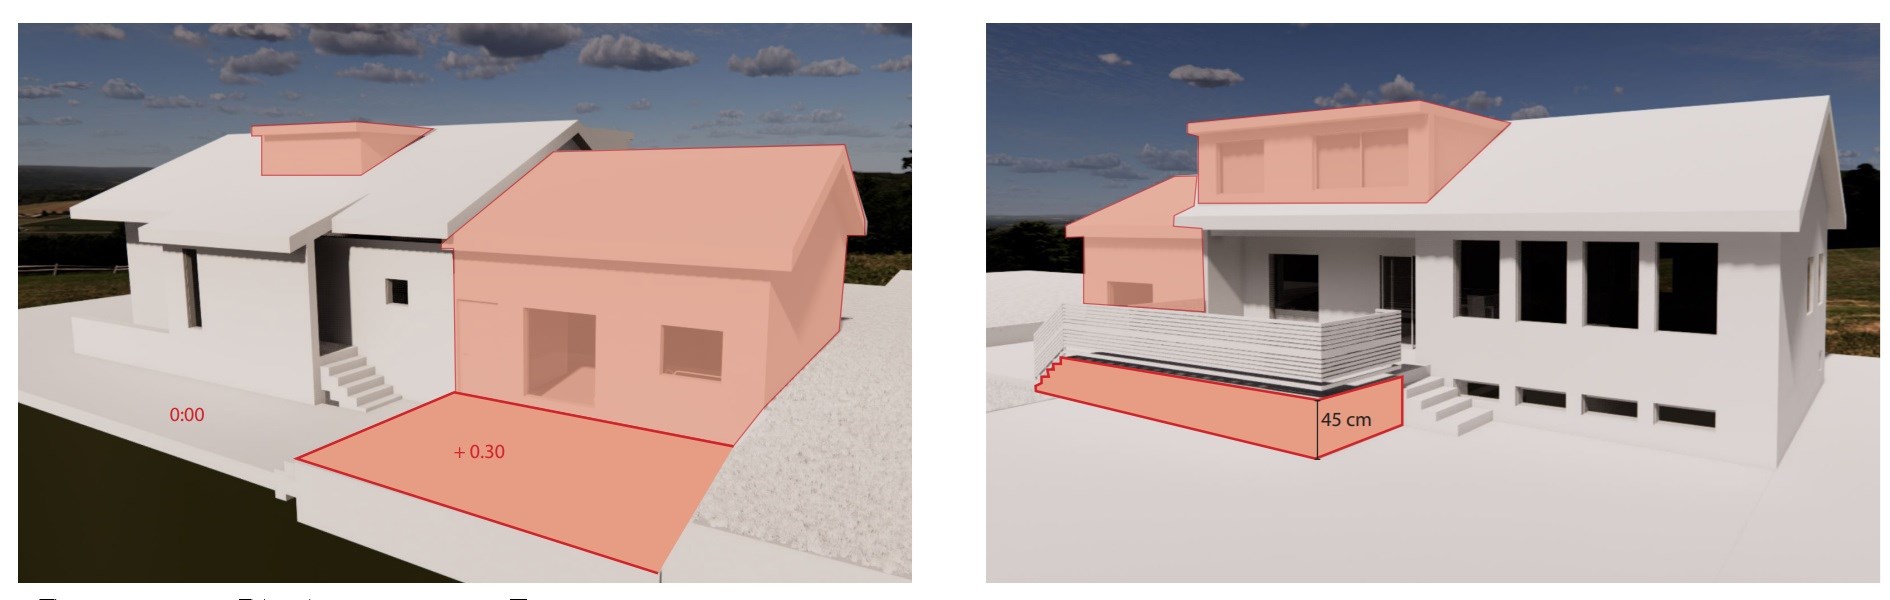 Planløsning ved endring av eldre bolig - 3D alt 1.jpg - olwike